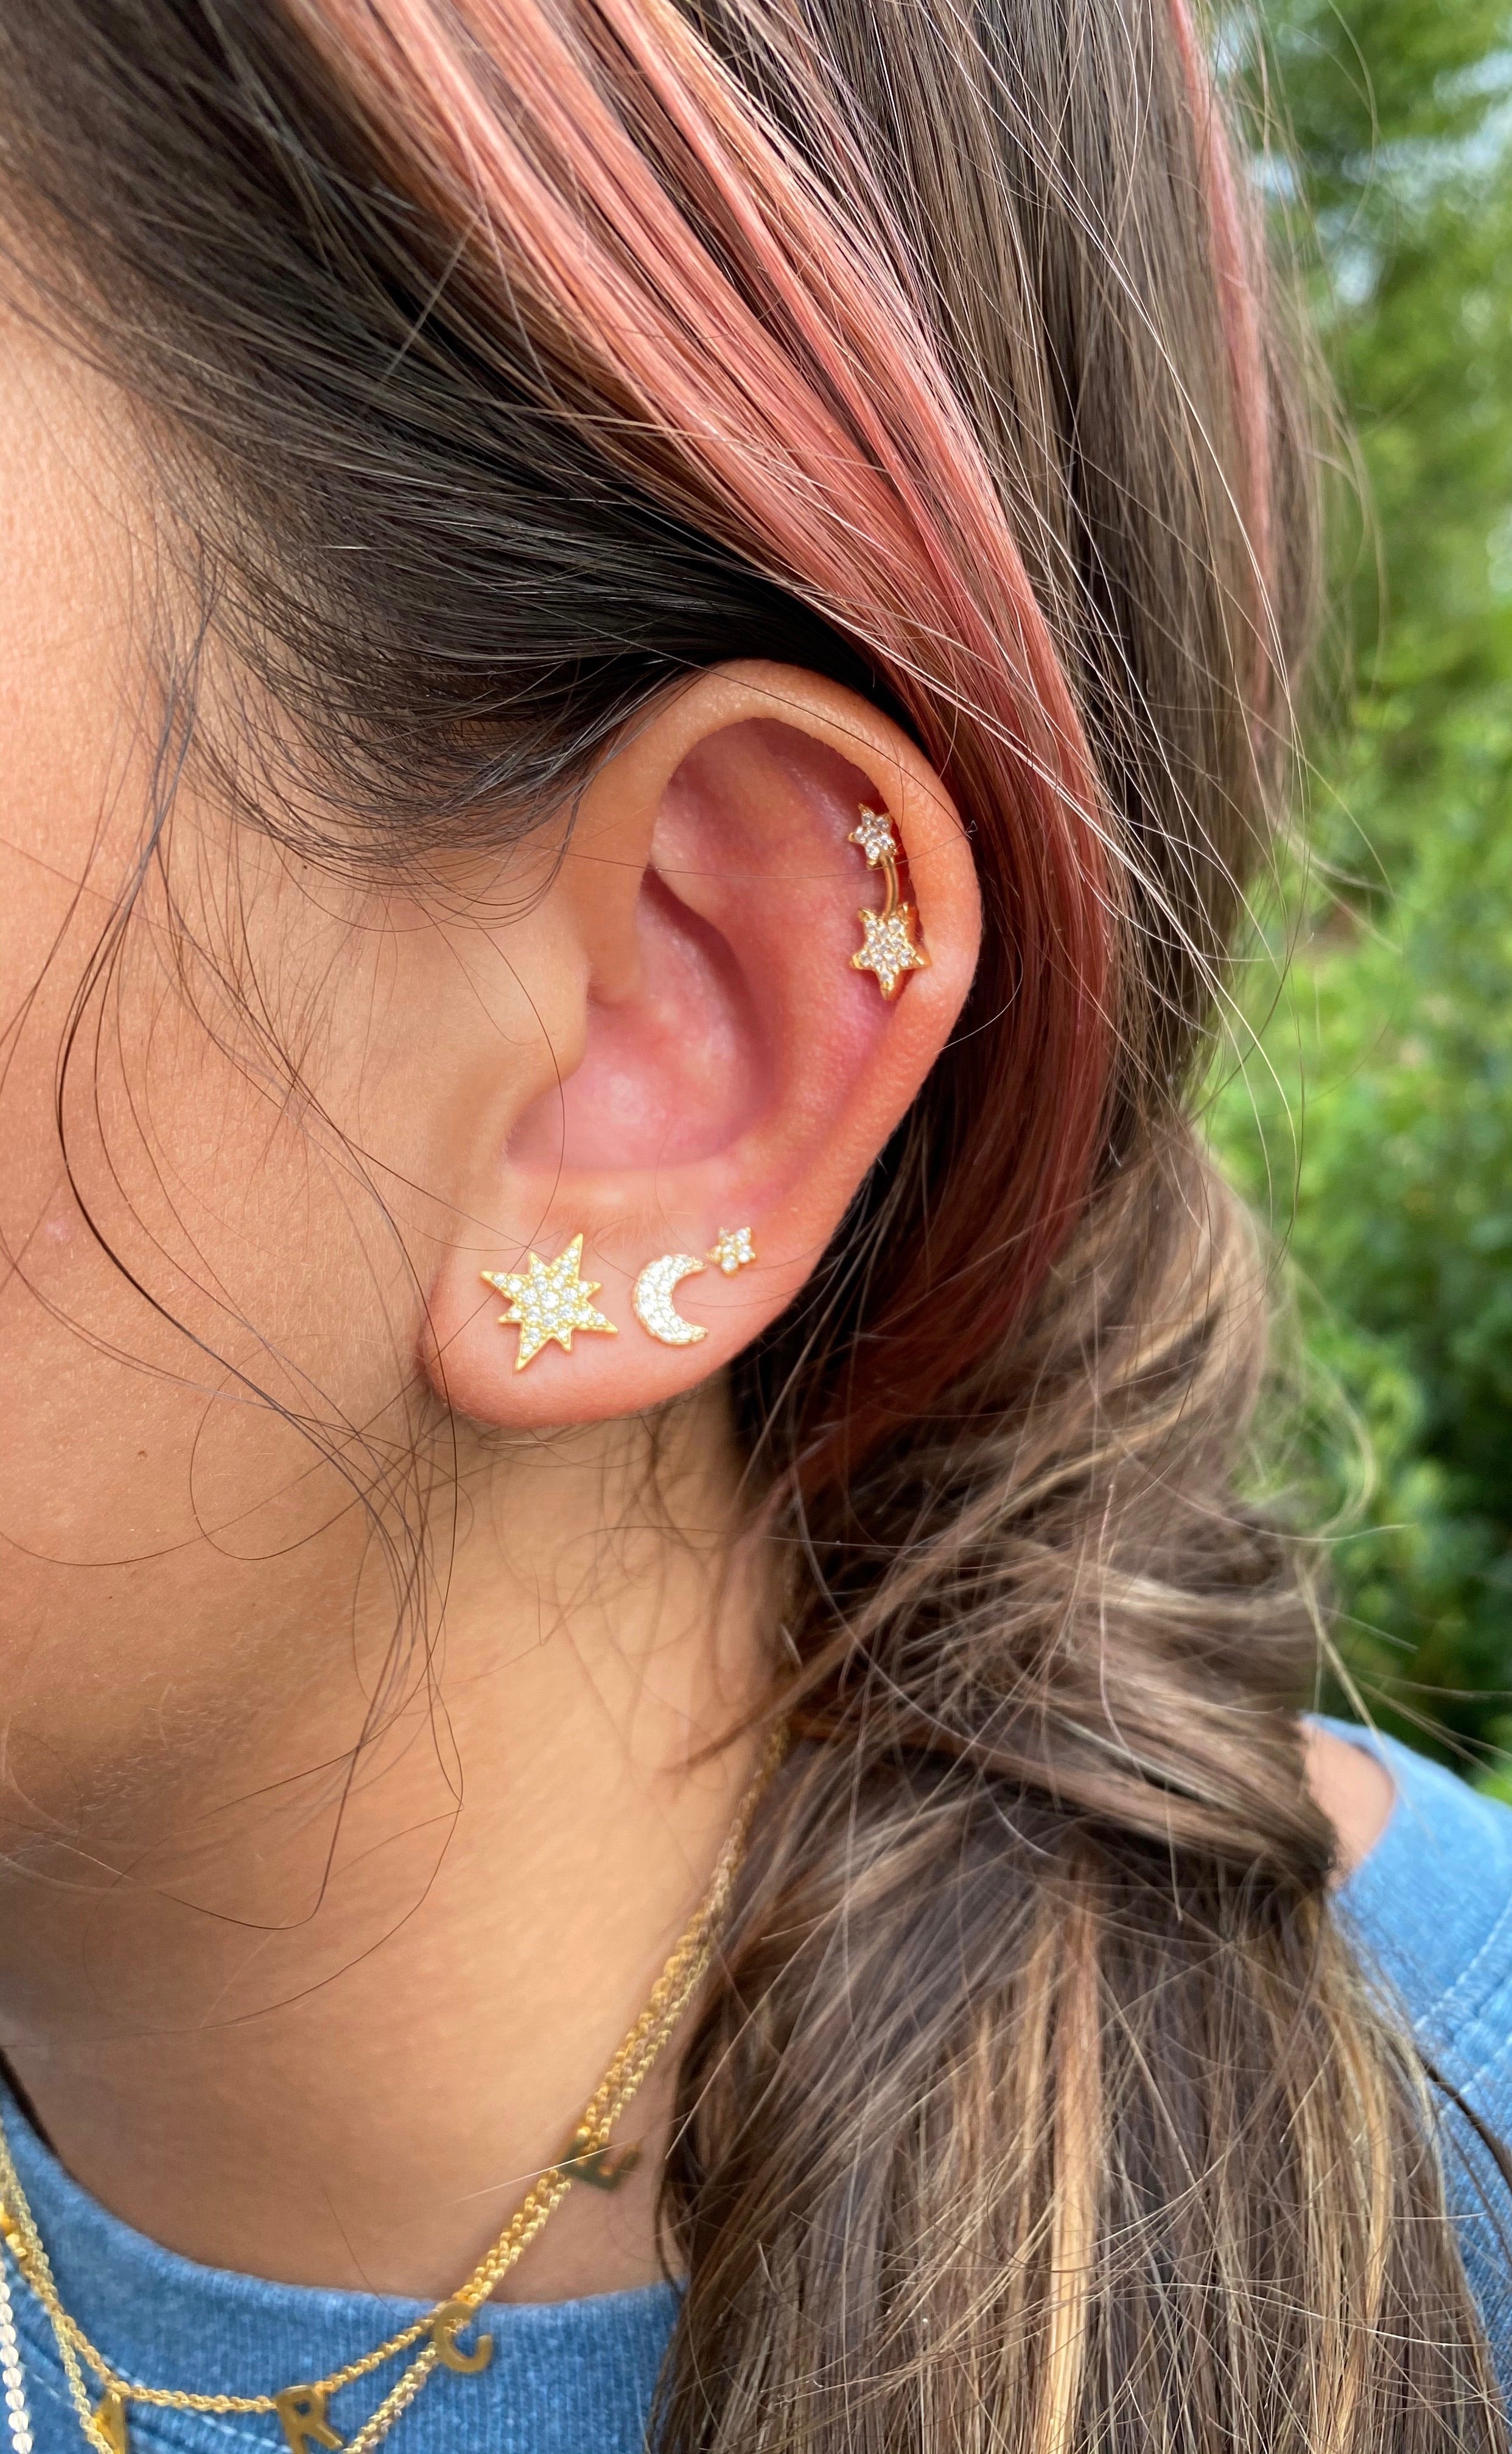 2 STAR CZ studs earrings